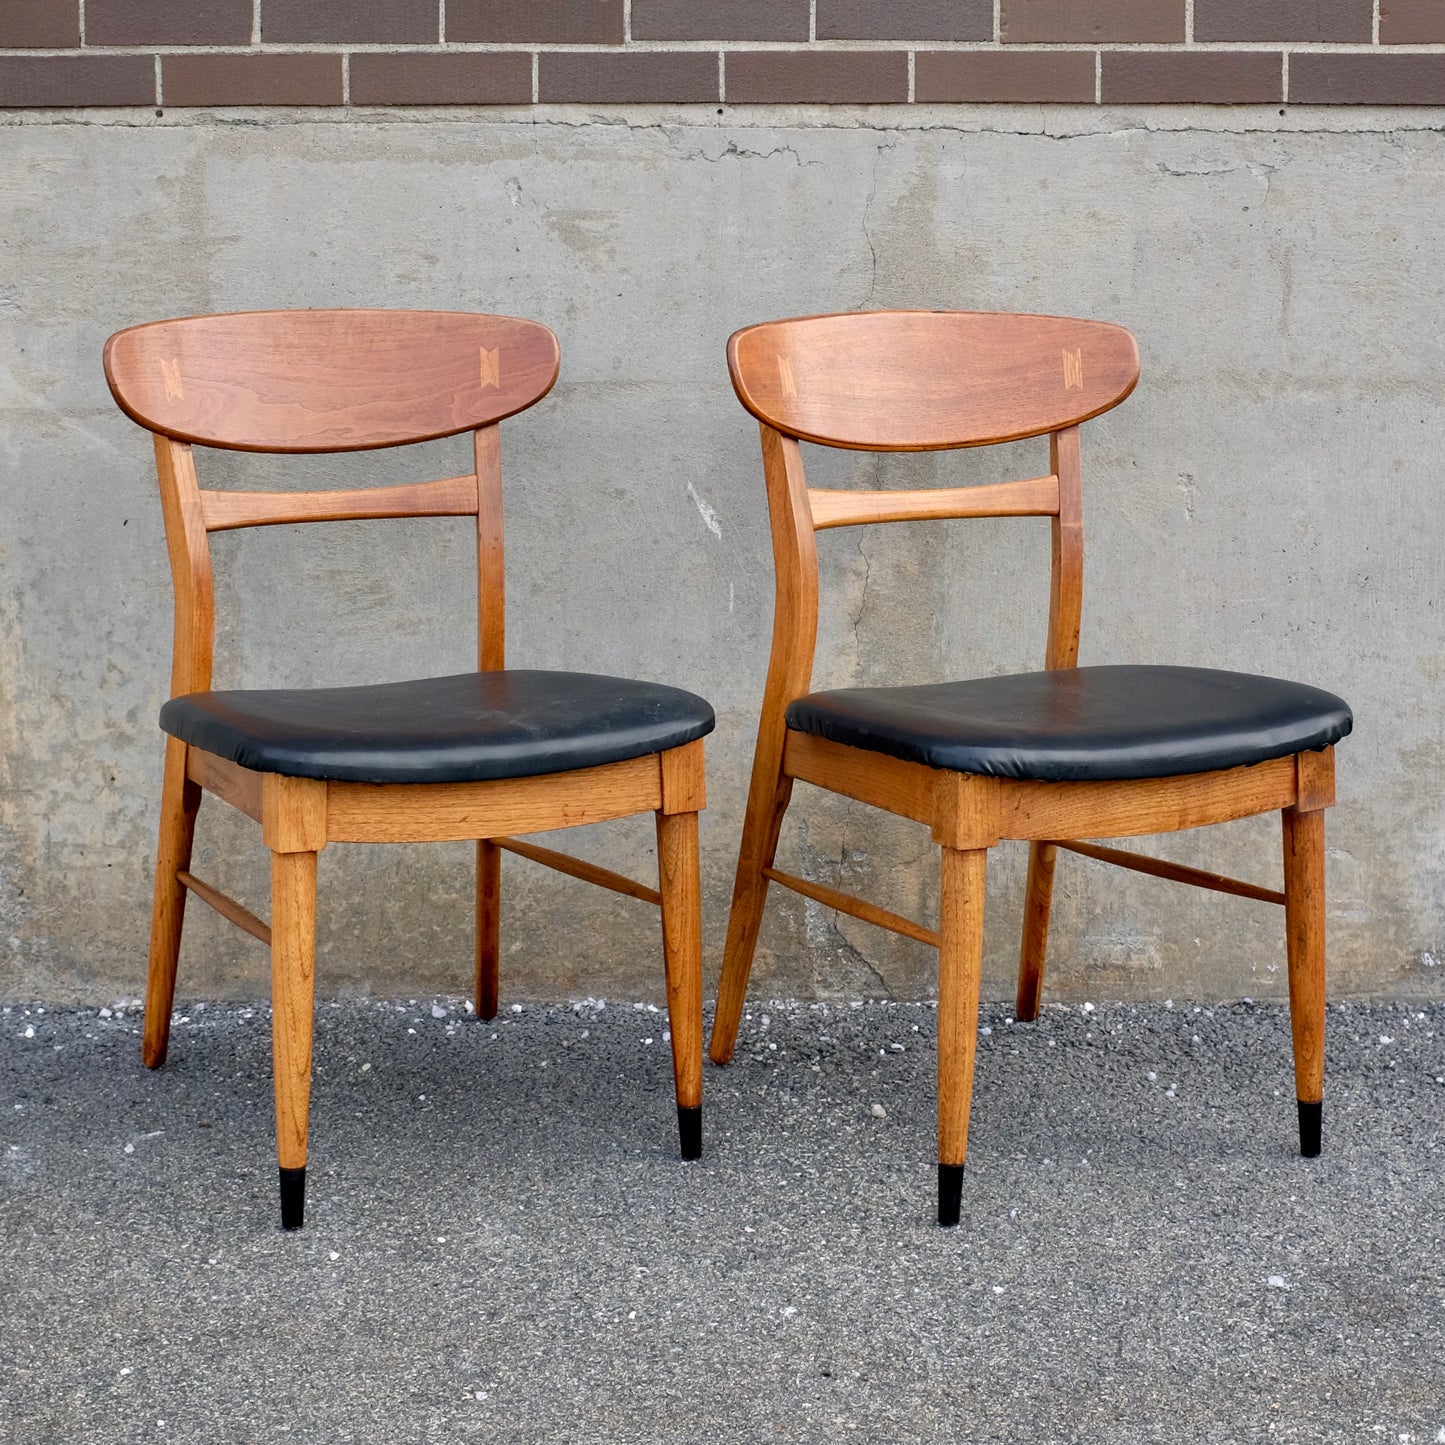 Lane Furniture "Acclaim" Walnut & Ash Dining Chairs - Set of 2